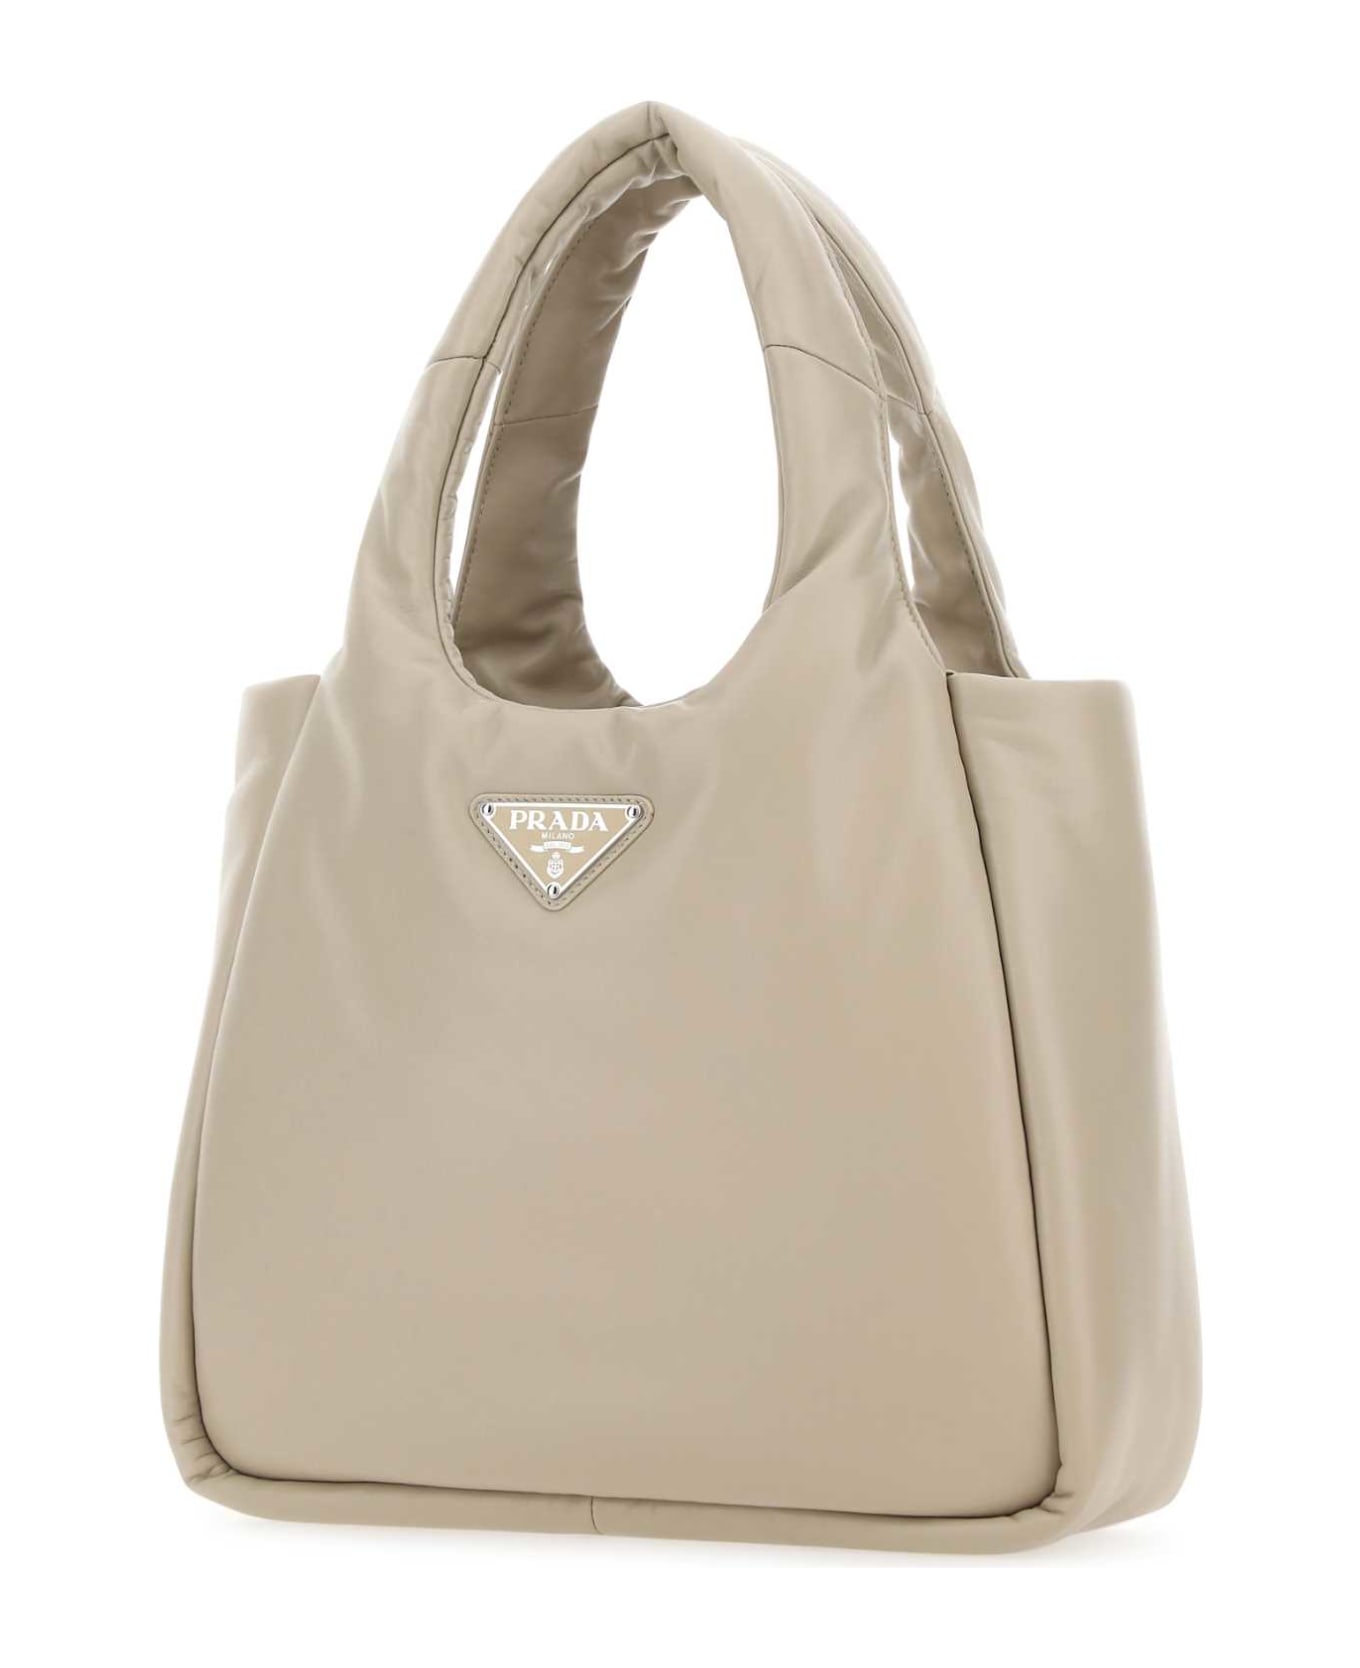 Prada Sand Nappa Leather Handbag - DESERTO